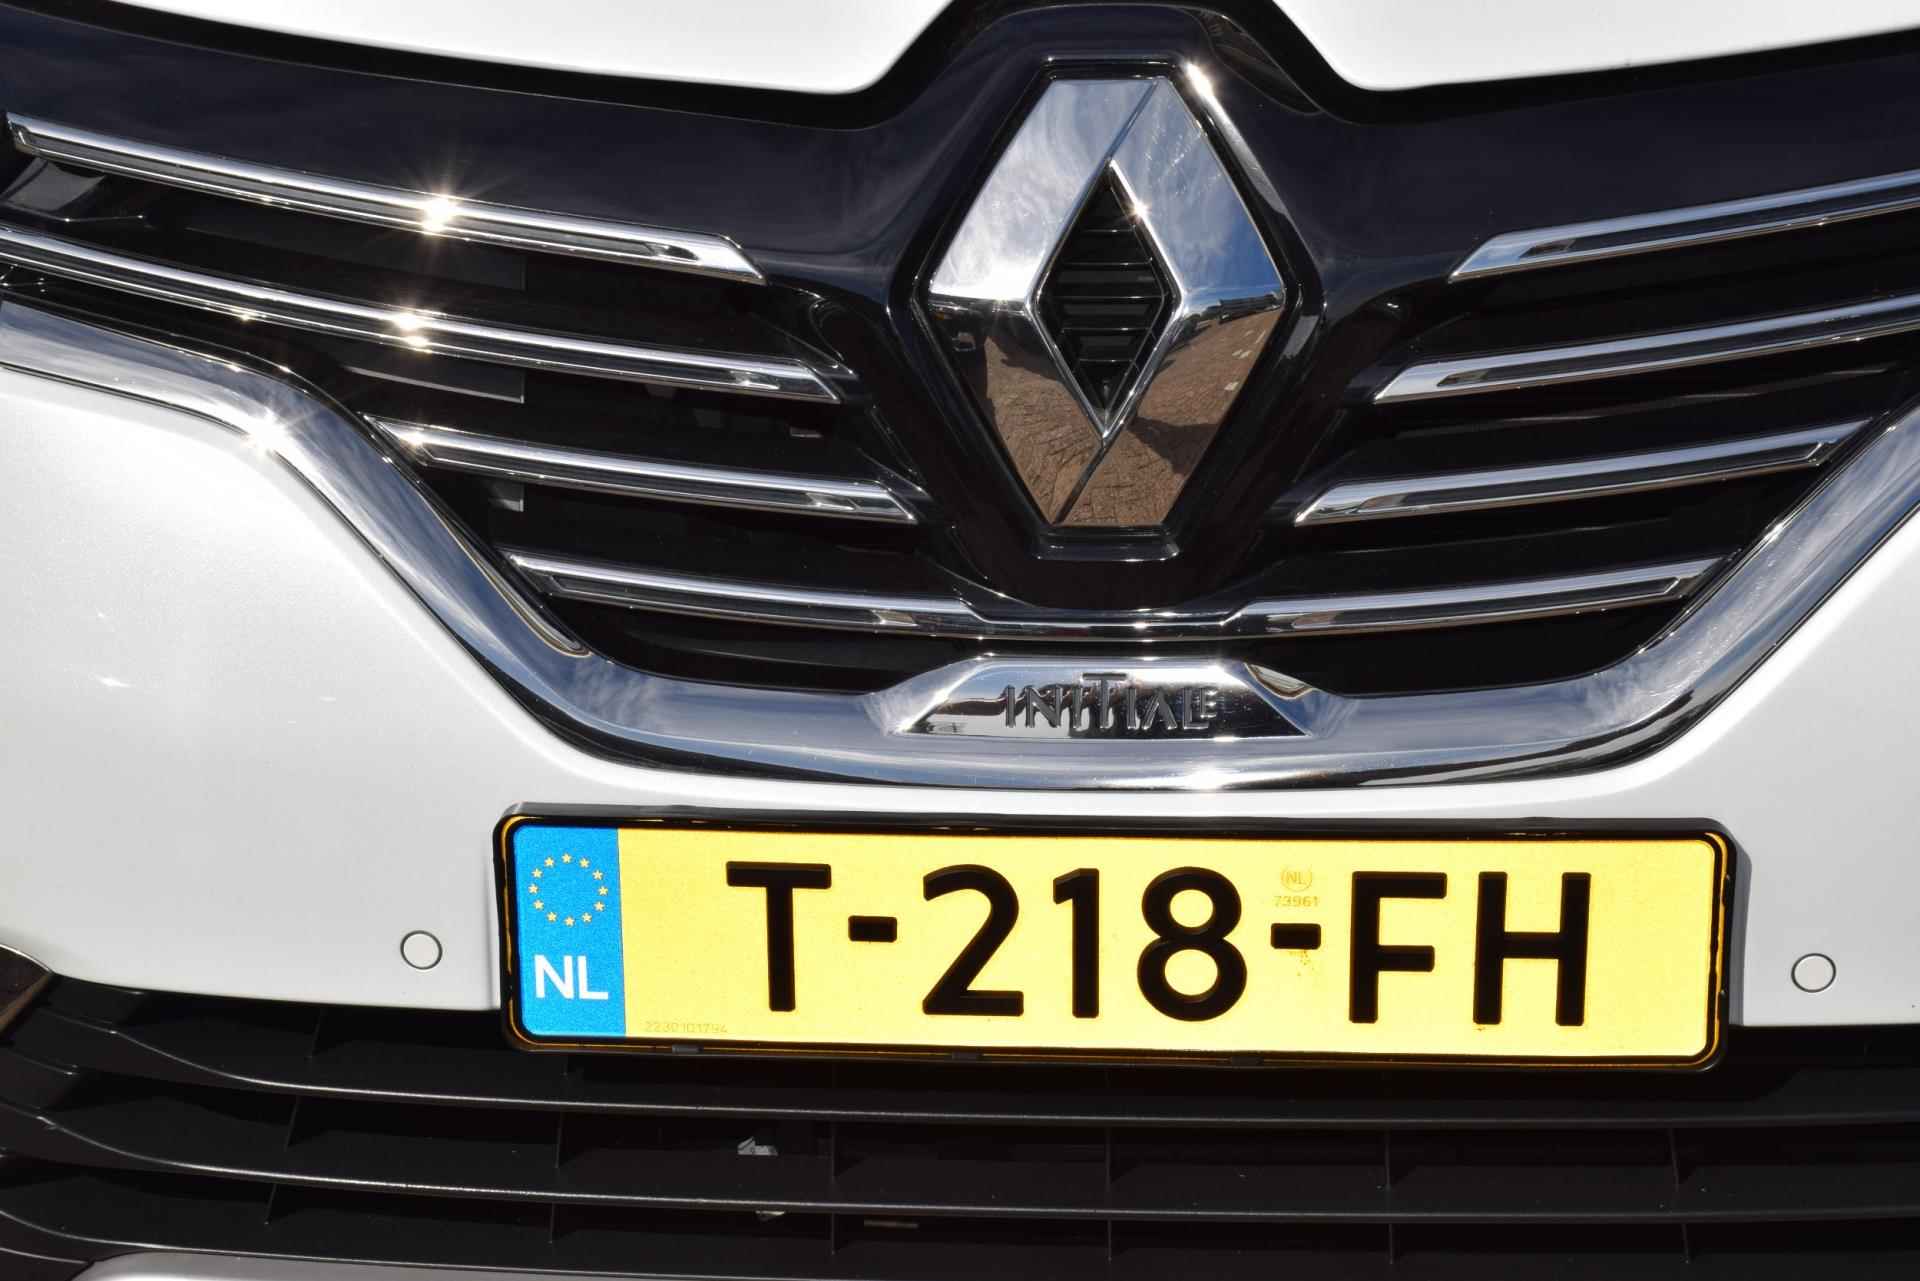 Renault ESPACE 1.8 TCe Initiale Paris 5p. LED, NAVI, PANODAK, MASSAGE STOELEN,PDC, PARK ASSIST. MAS. STOELEN, ELEKTR.BED.TREKHAAK - 6/87